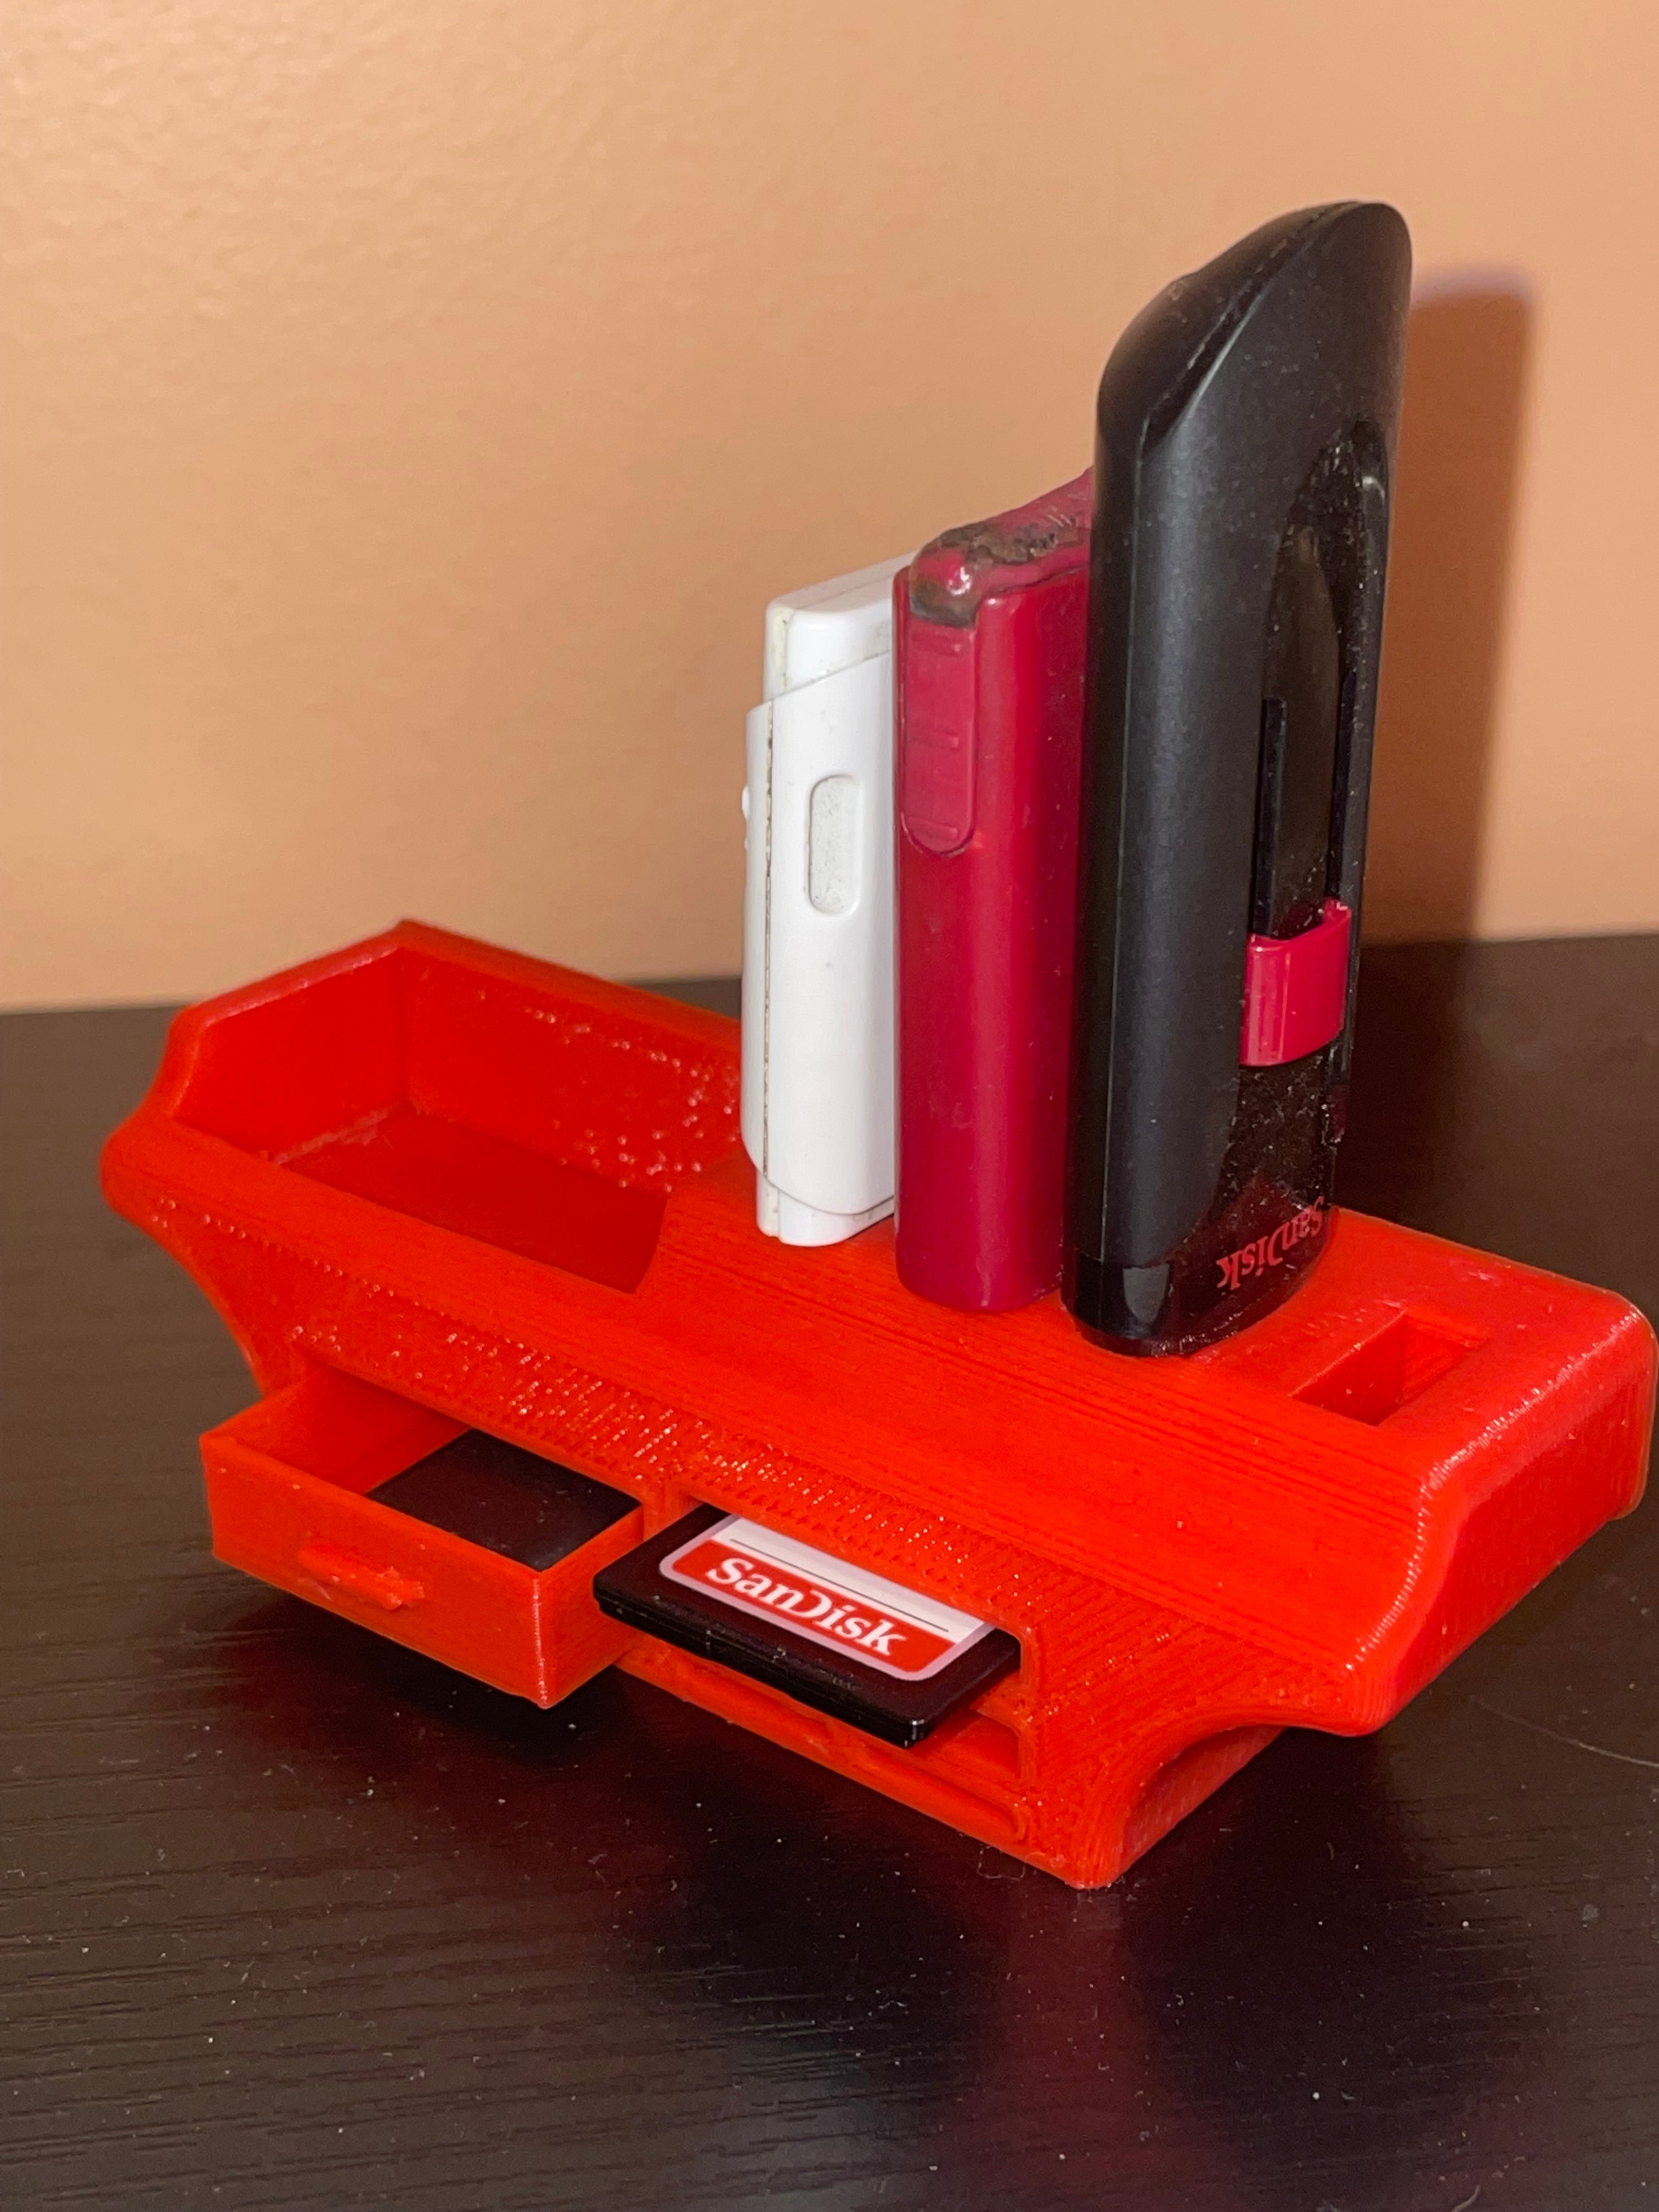 Μικρή και κομψή θήκη για κάρτες USB, SD και Micro SD